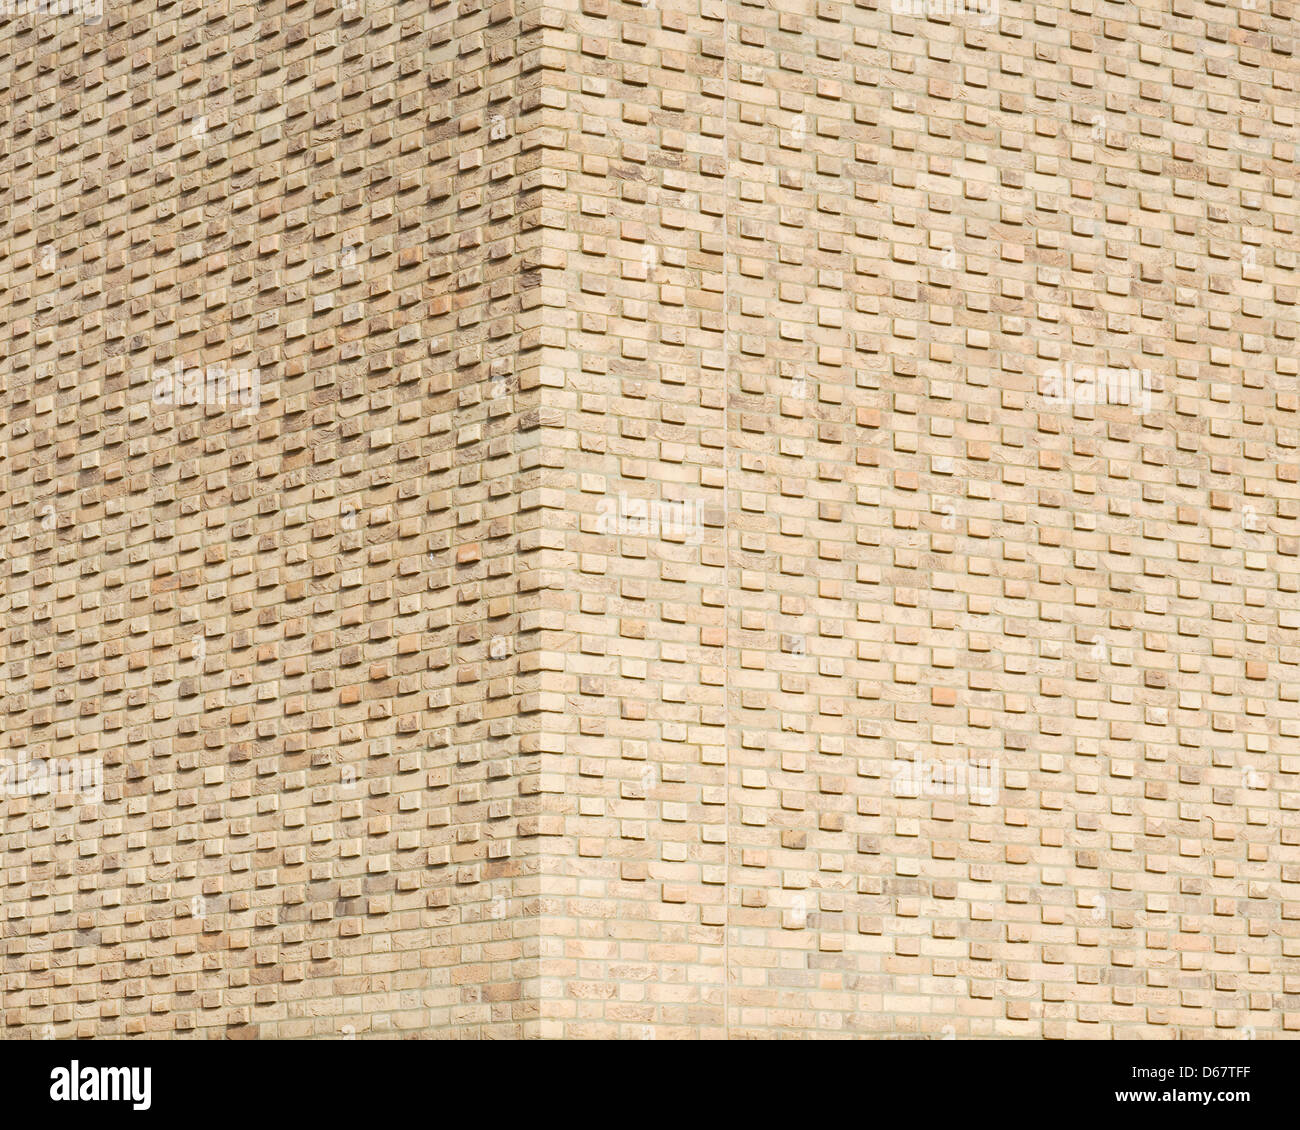 Institut für Werkstoffkunde und Metallurgie Gebäude, Cambridge, Vereinigtes Königreich. Architekt: NBBJ, 2013. Detailansicht des brickw Stockfoto